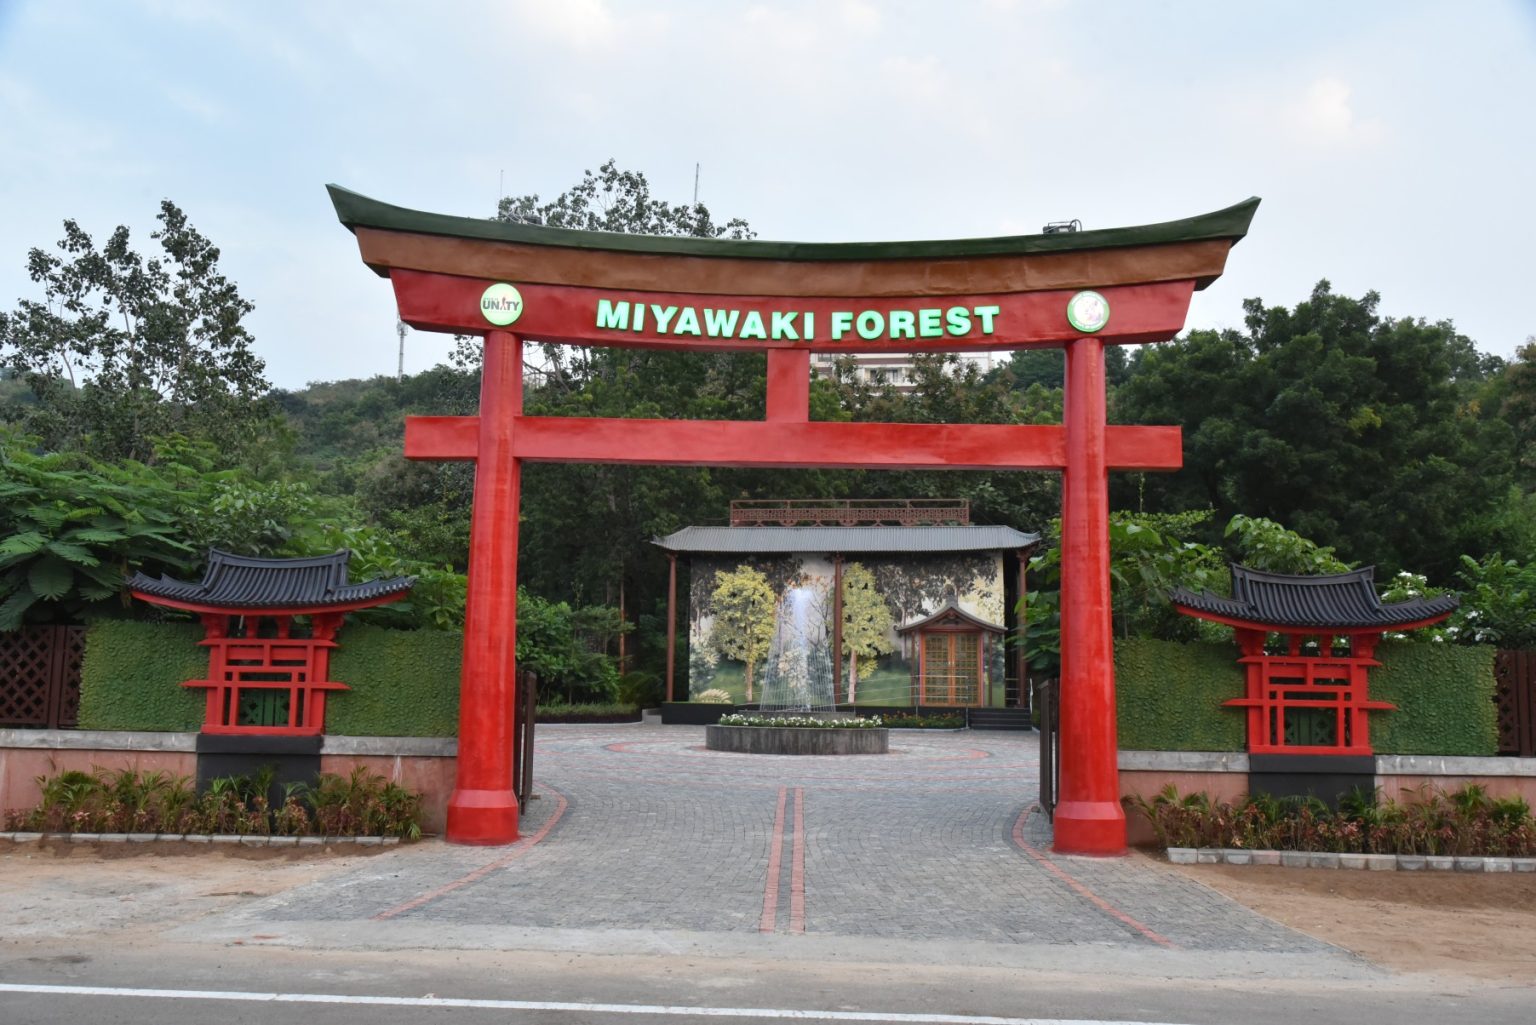 The Miyawaki Forest